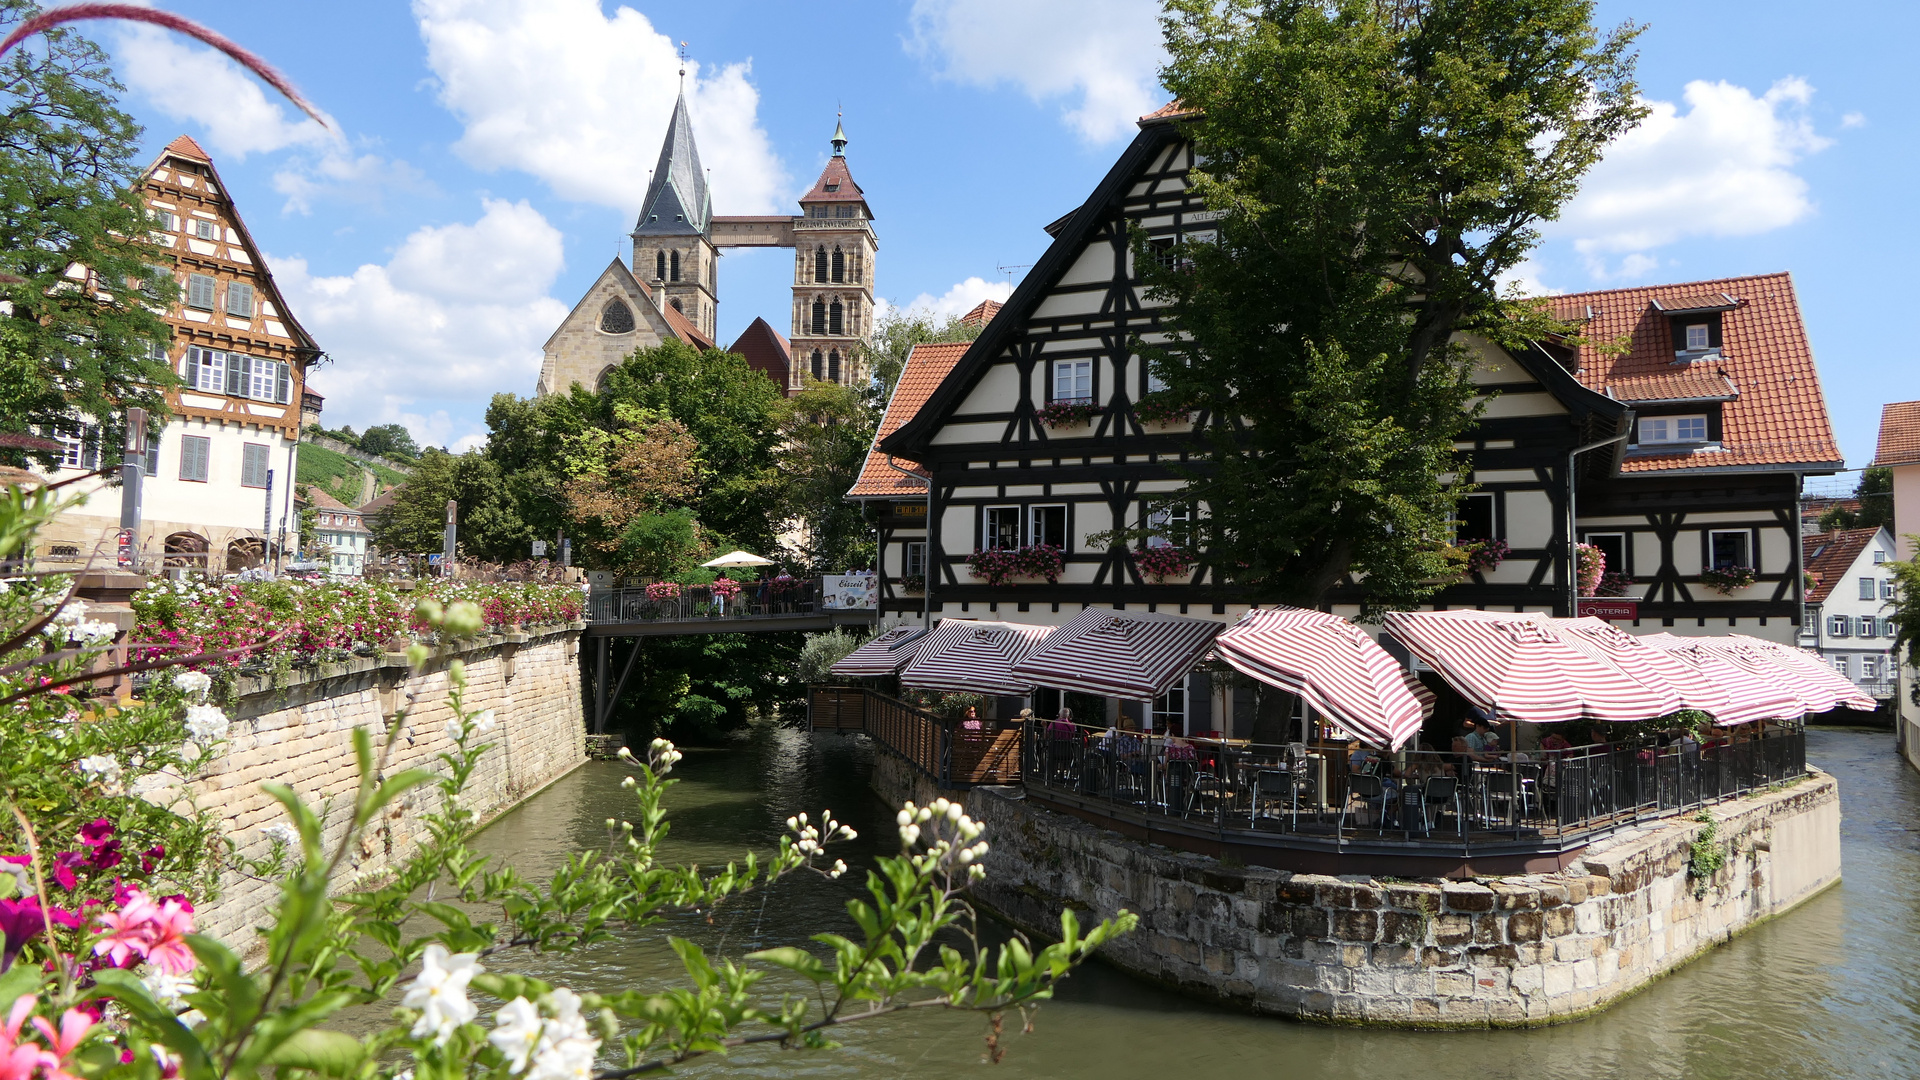 2022-08-22; Esslingen; Blick auf das Gasthaus mit Stadtkirche St. Dionys